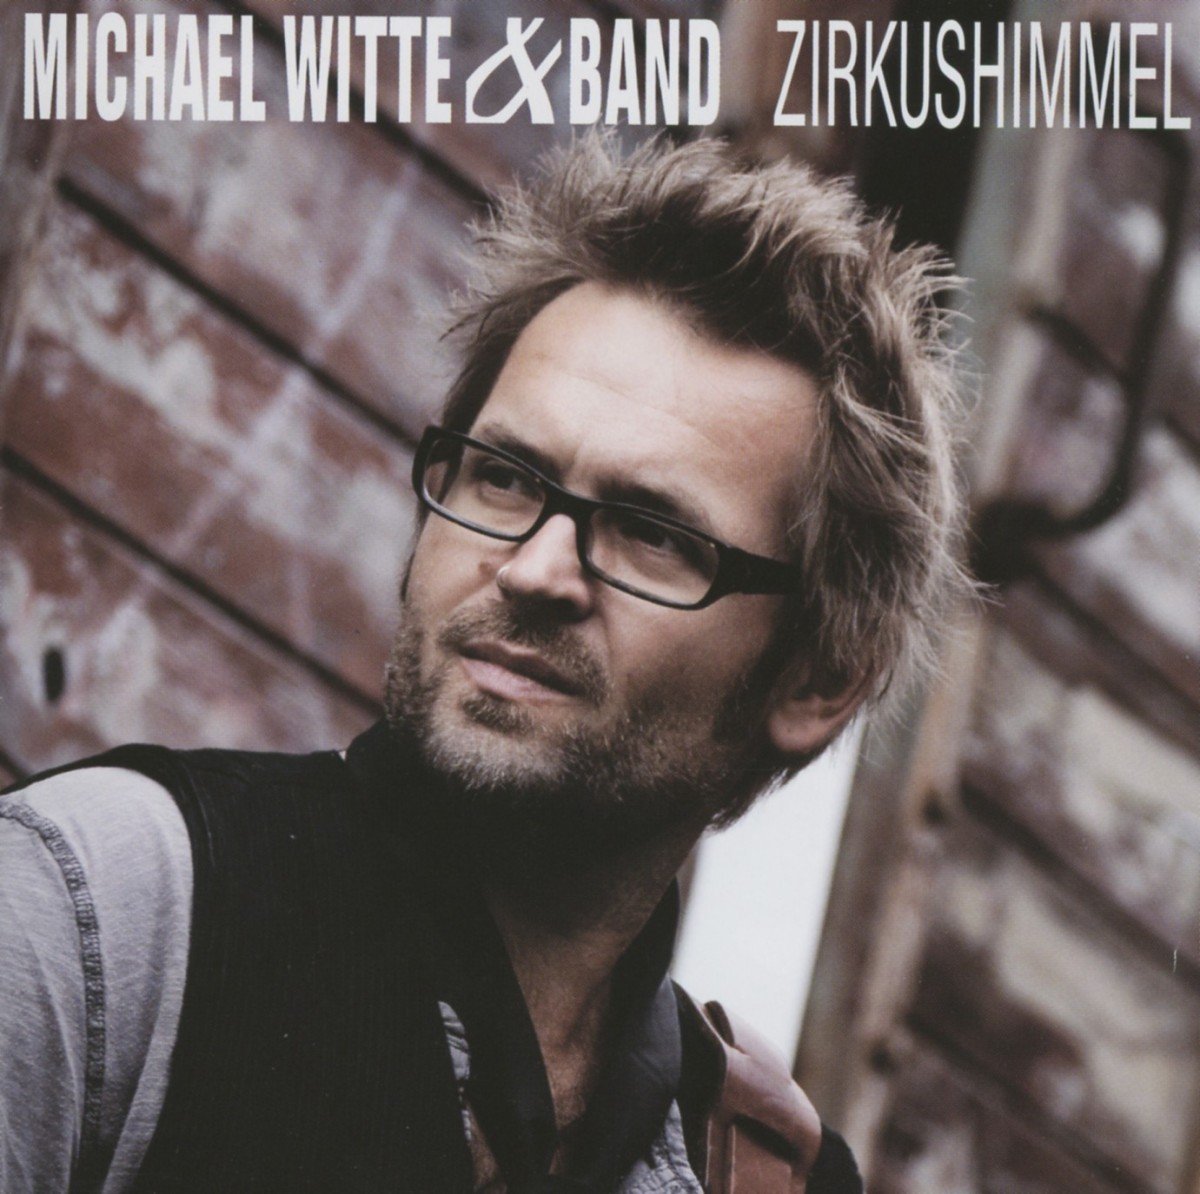 Zirkushimmel - Michael Witte&Band